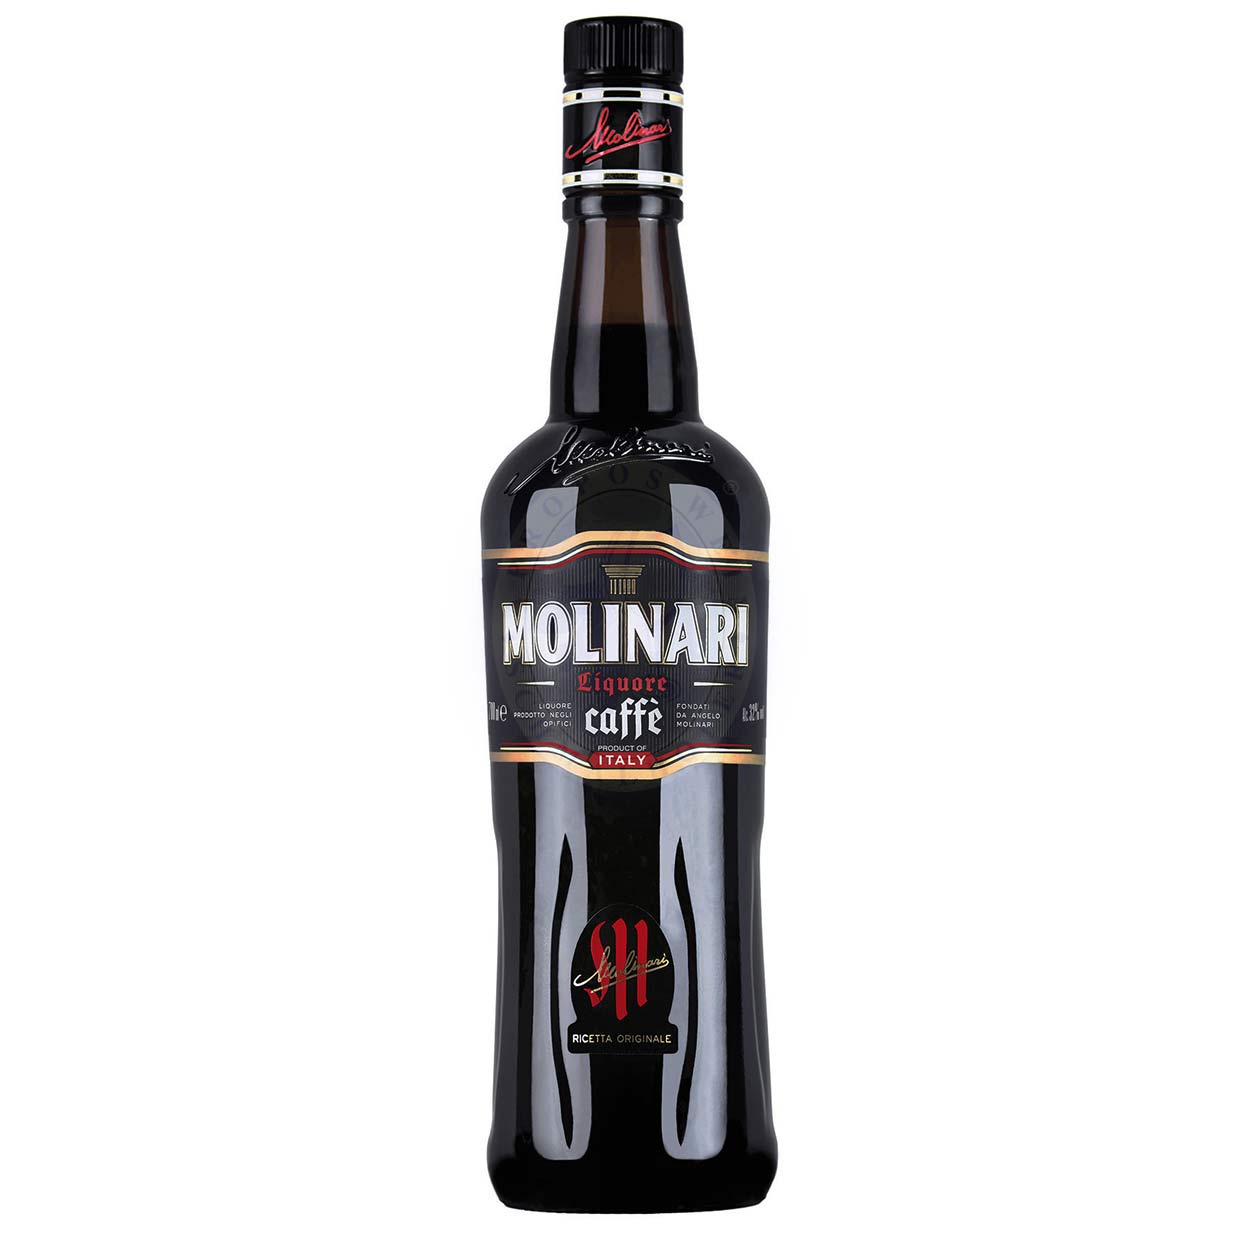 Molinari Caffè Molinari 0,7l